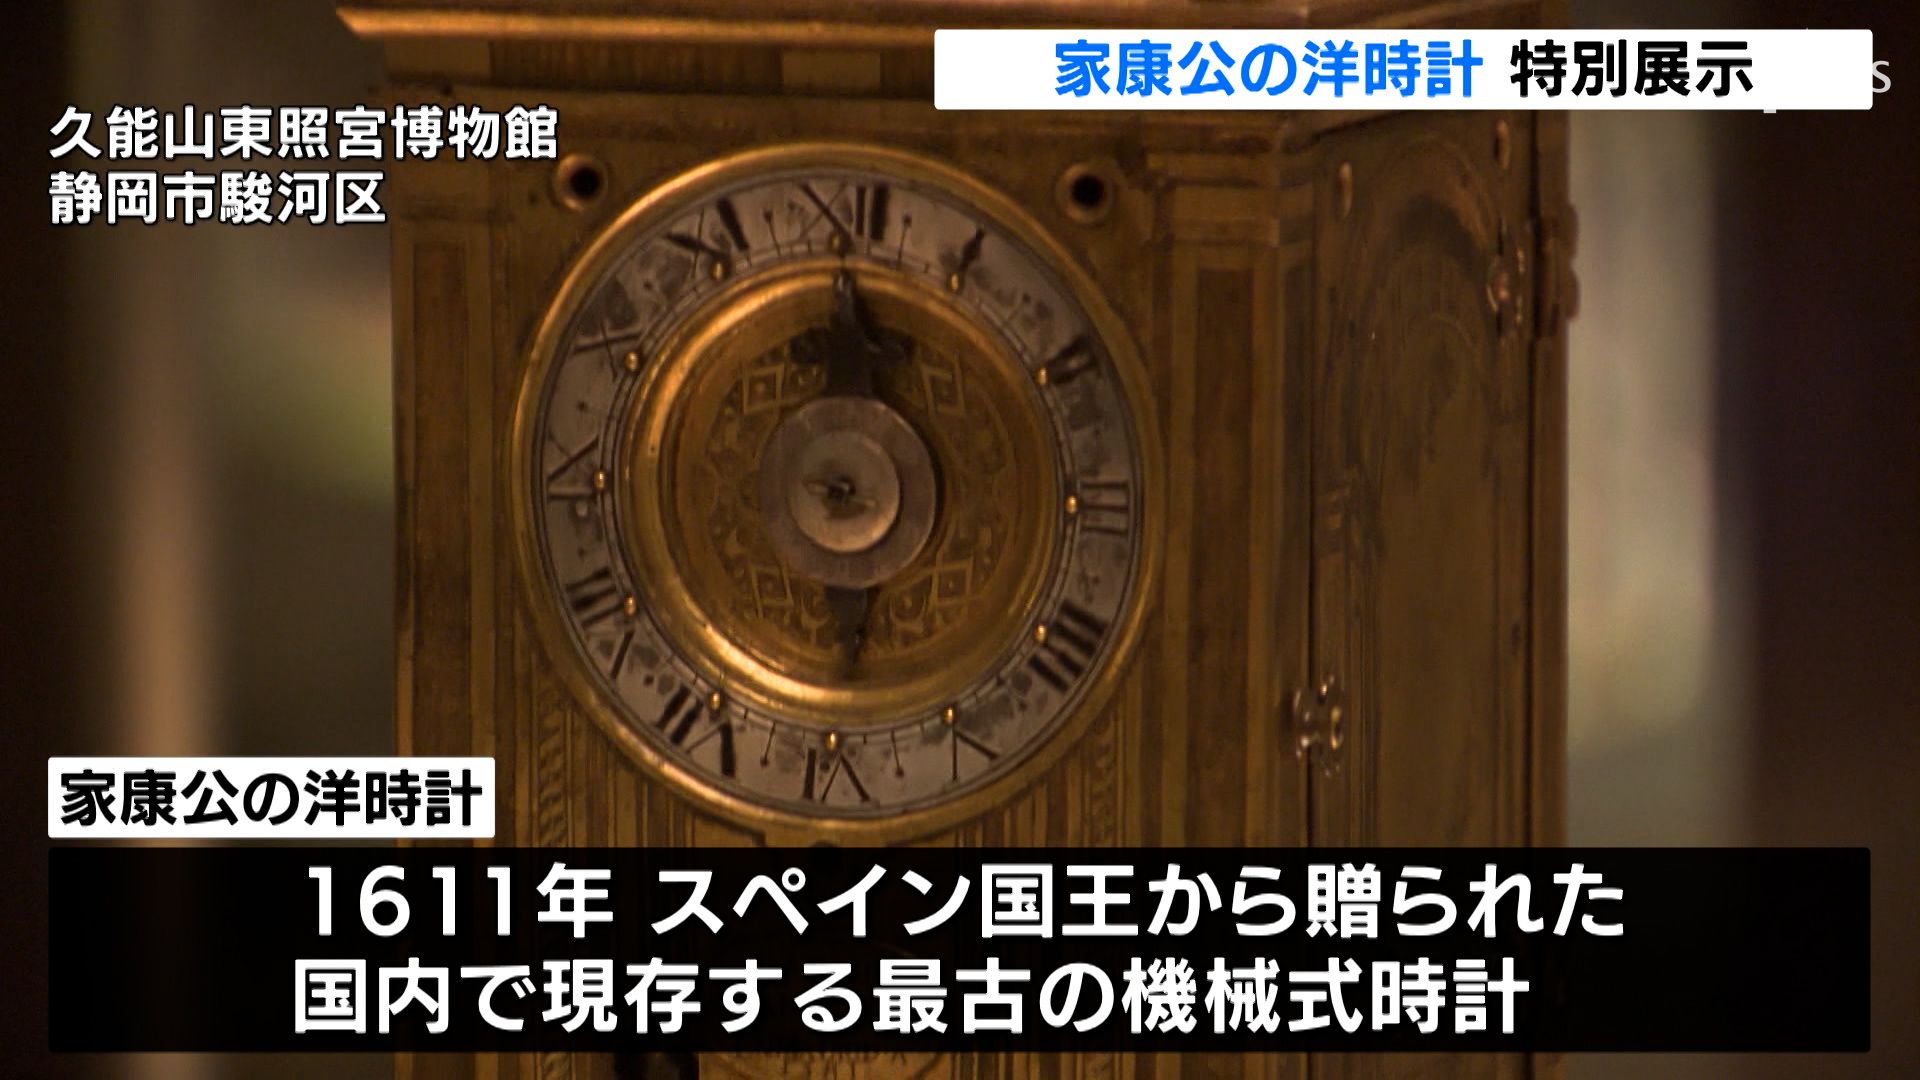 黄金の輝き放つ“国内最古”の「家康公の洋時計」を特別公開 静岡・久能 